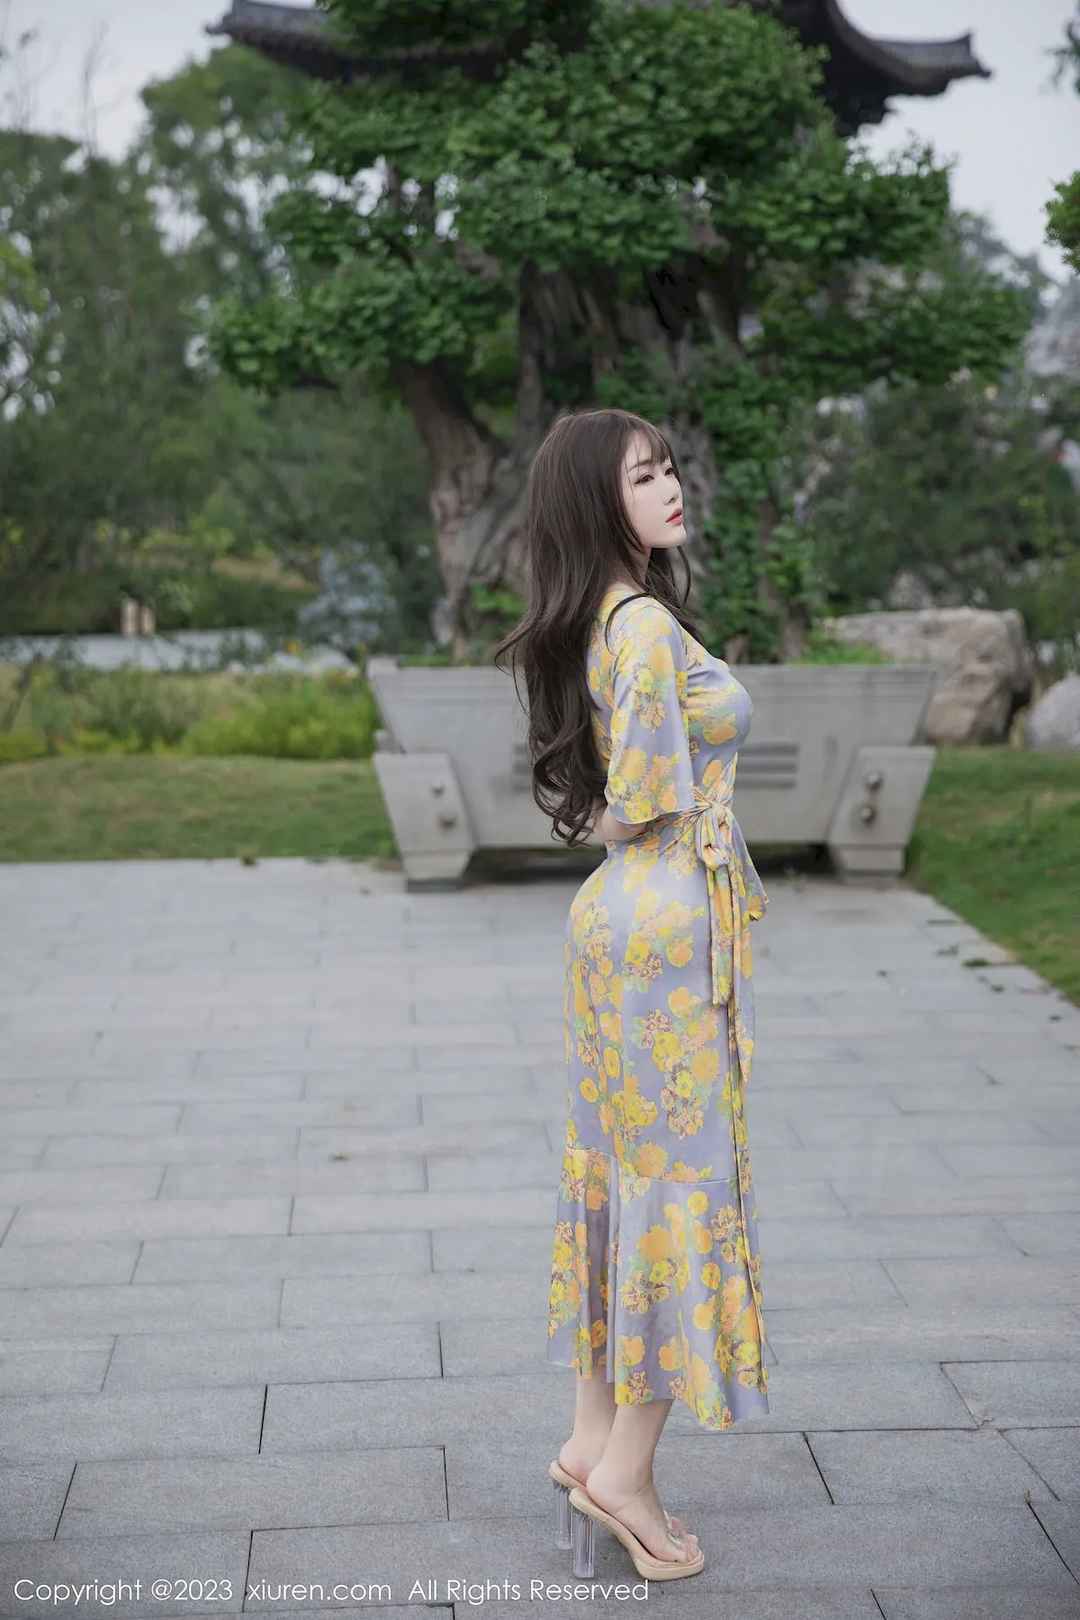 严利娅Yuliya轻盈动人黄灰色睡裙高挑身材性感写真